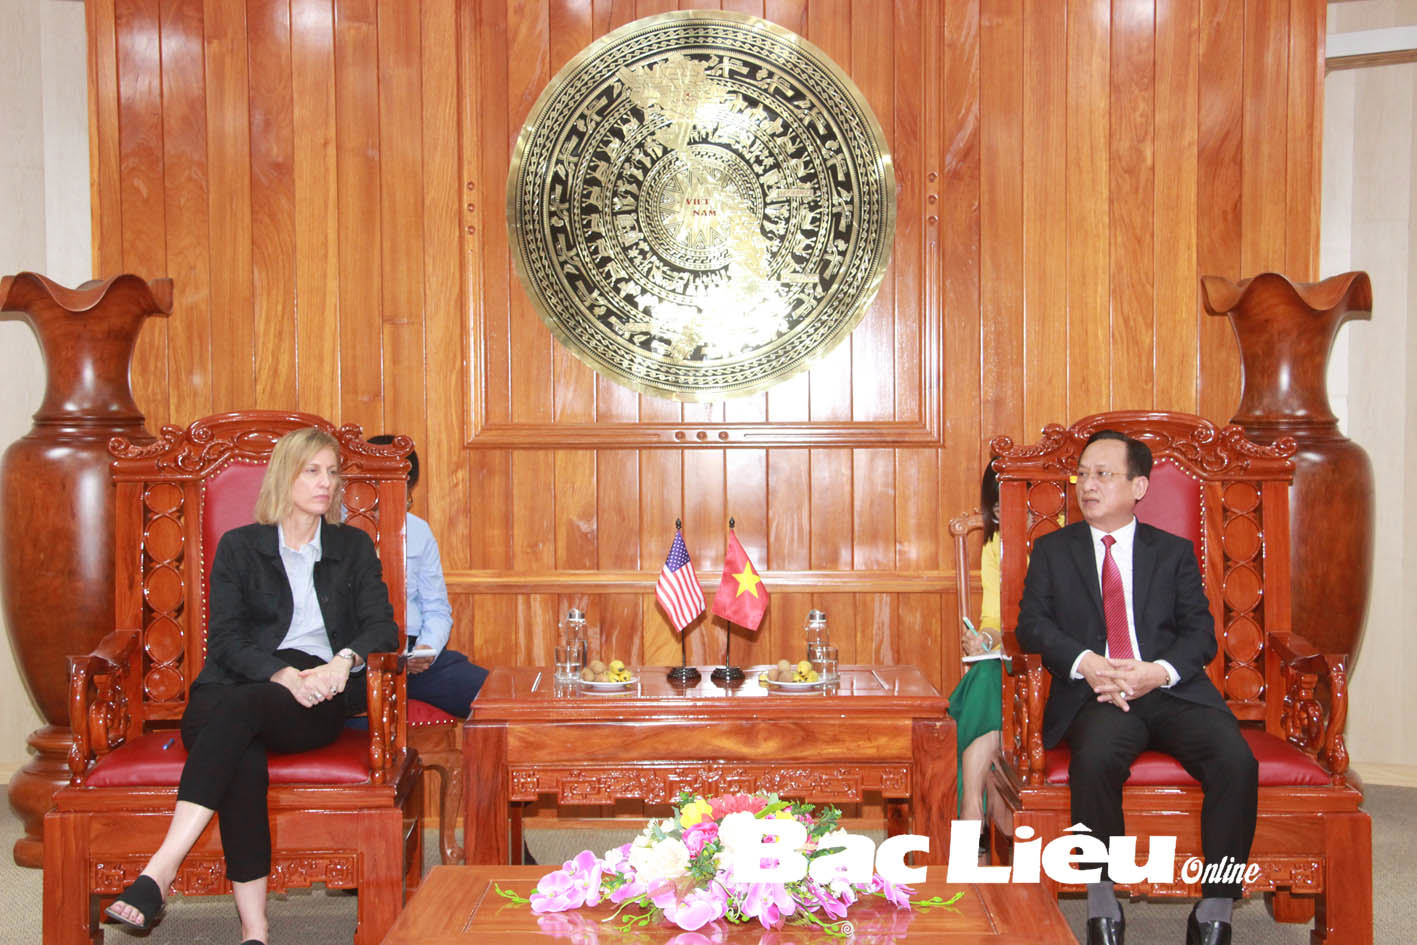 Ông Phạm Văn Thiều - Chủ tịch UBND tỉnh Bạc Liêu và bà Susan Burns - Tổng lãnh sự Hoa Kỳ tại TP. Hồ Chí Minh trao đổi những vấn đề 2 bên cùng quan tâm. Ảnh: N.Q